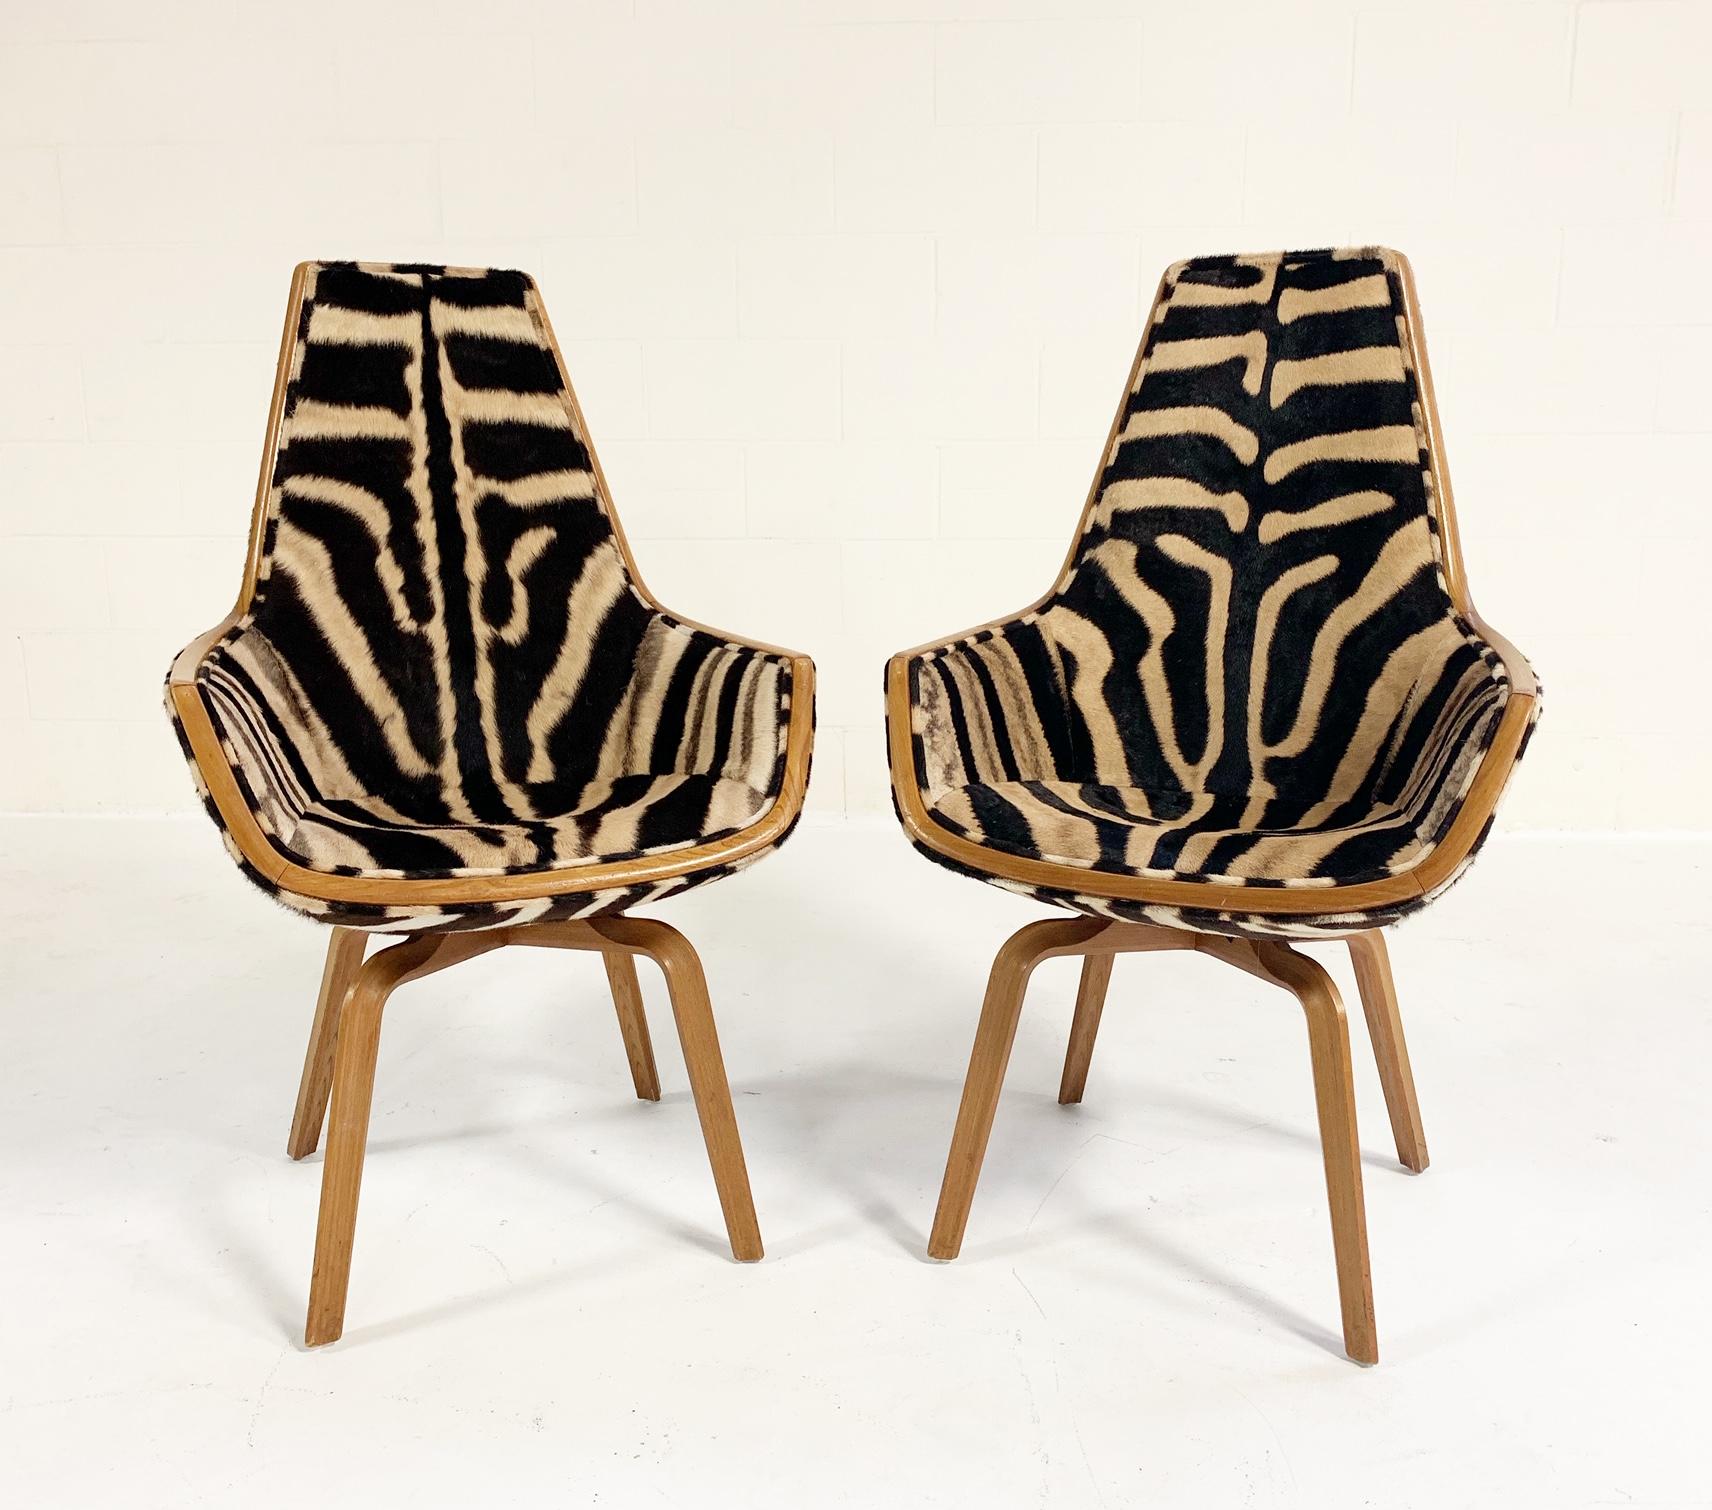 Rare Arne Jacobsen for Fritz Hansen Giraffe Chairs Restored in Zebra Hide, Pair 2